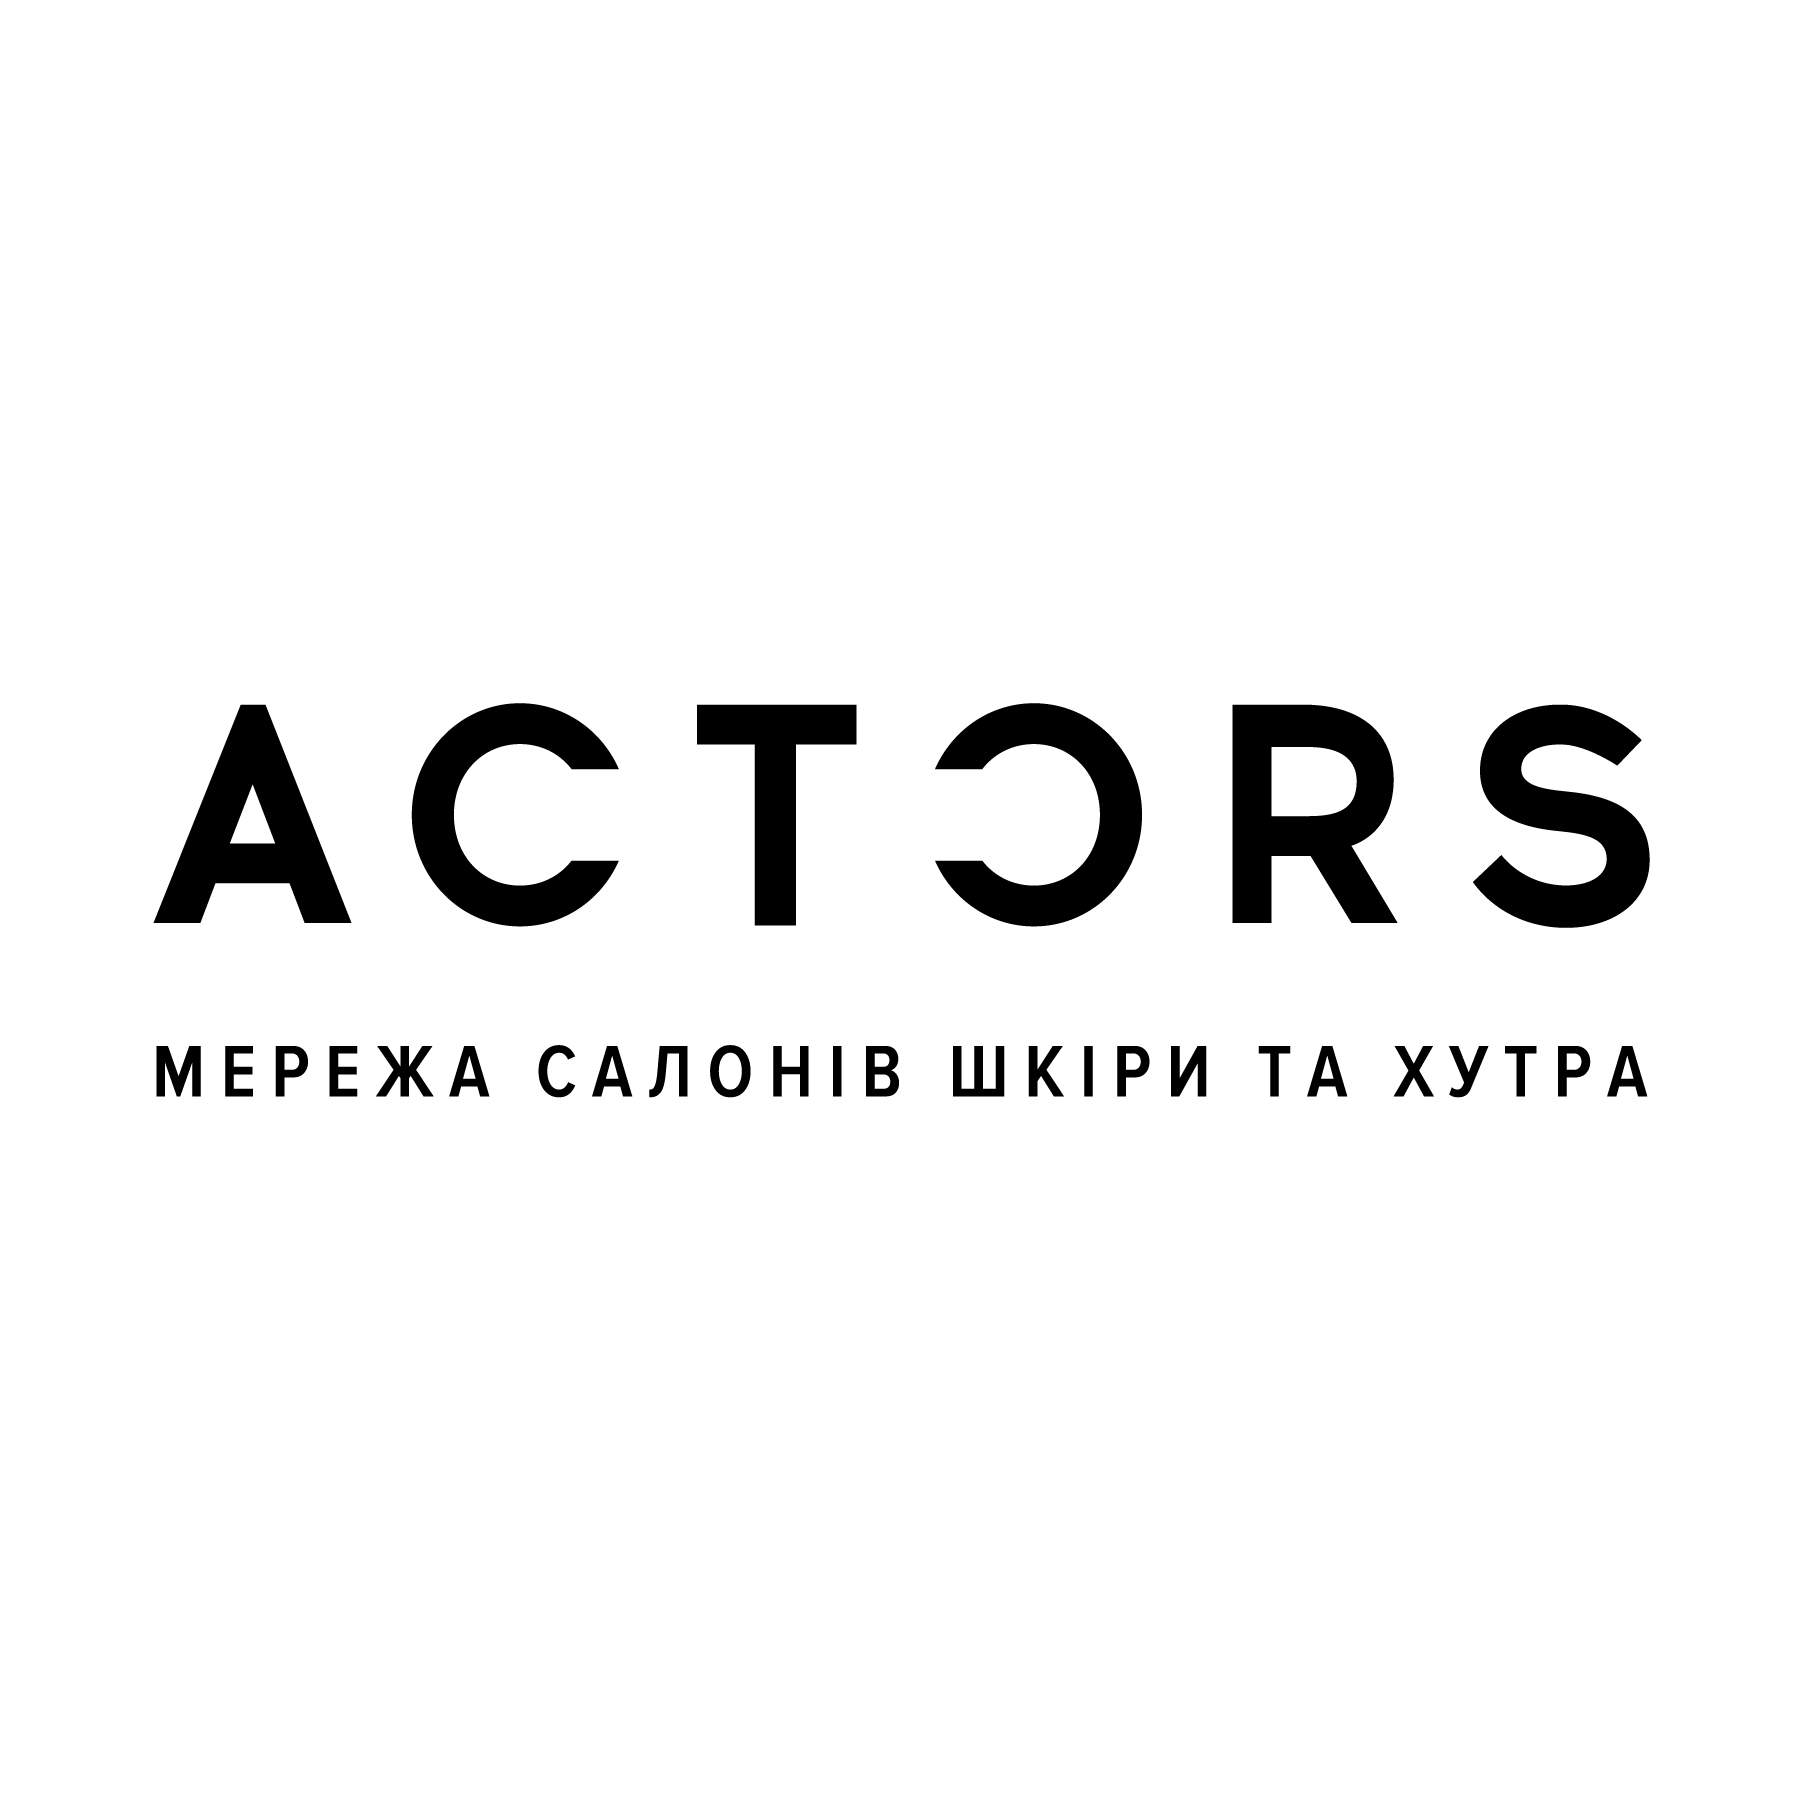 ACTORS